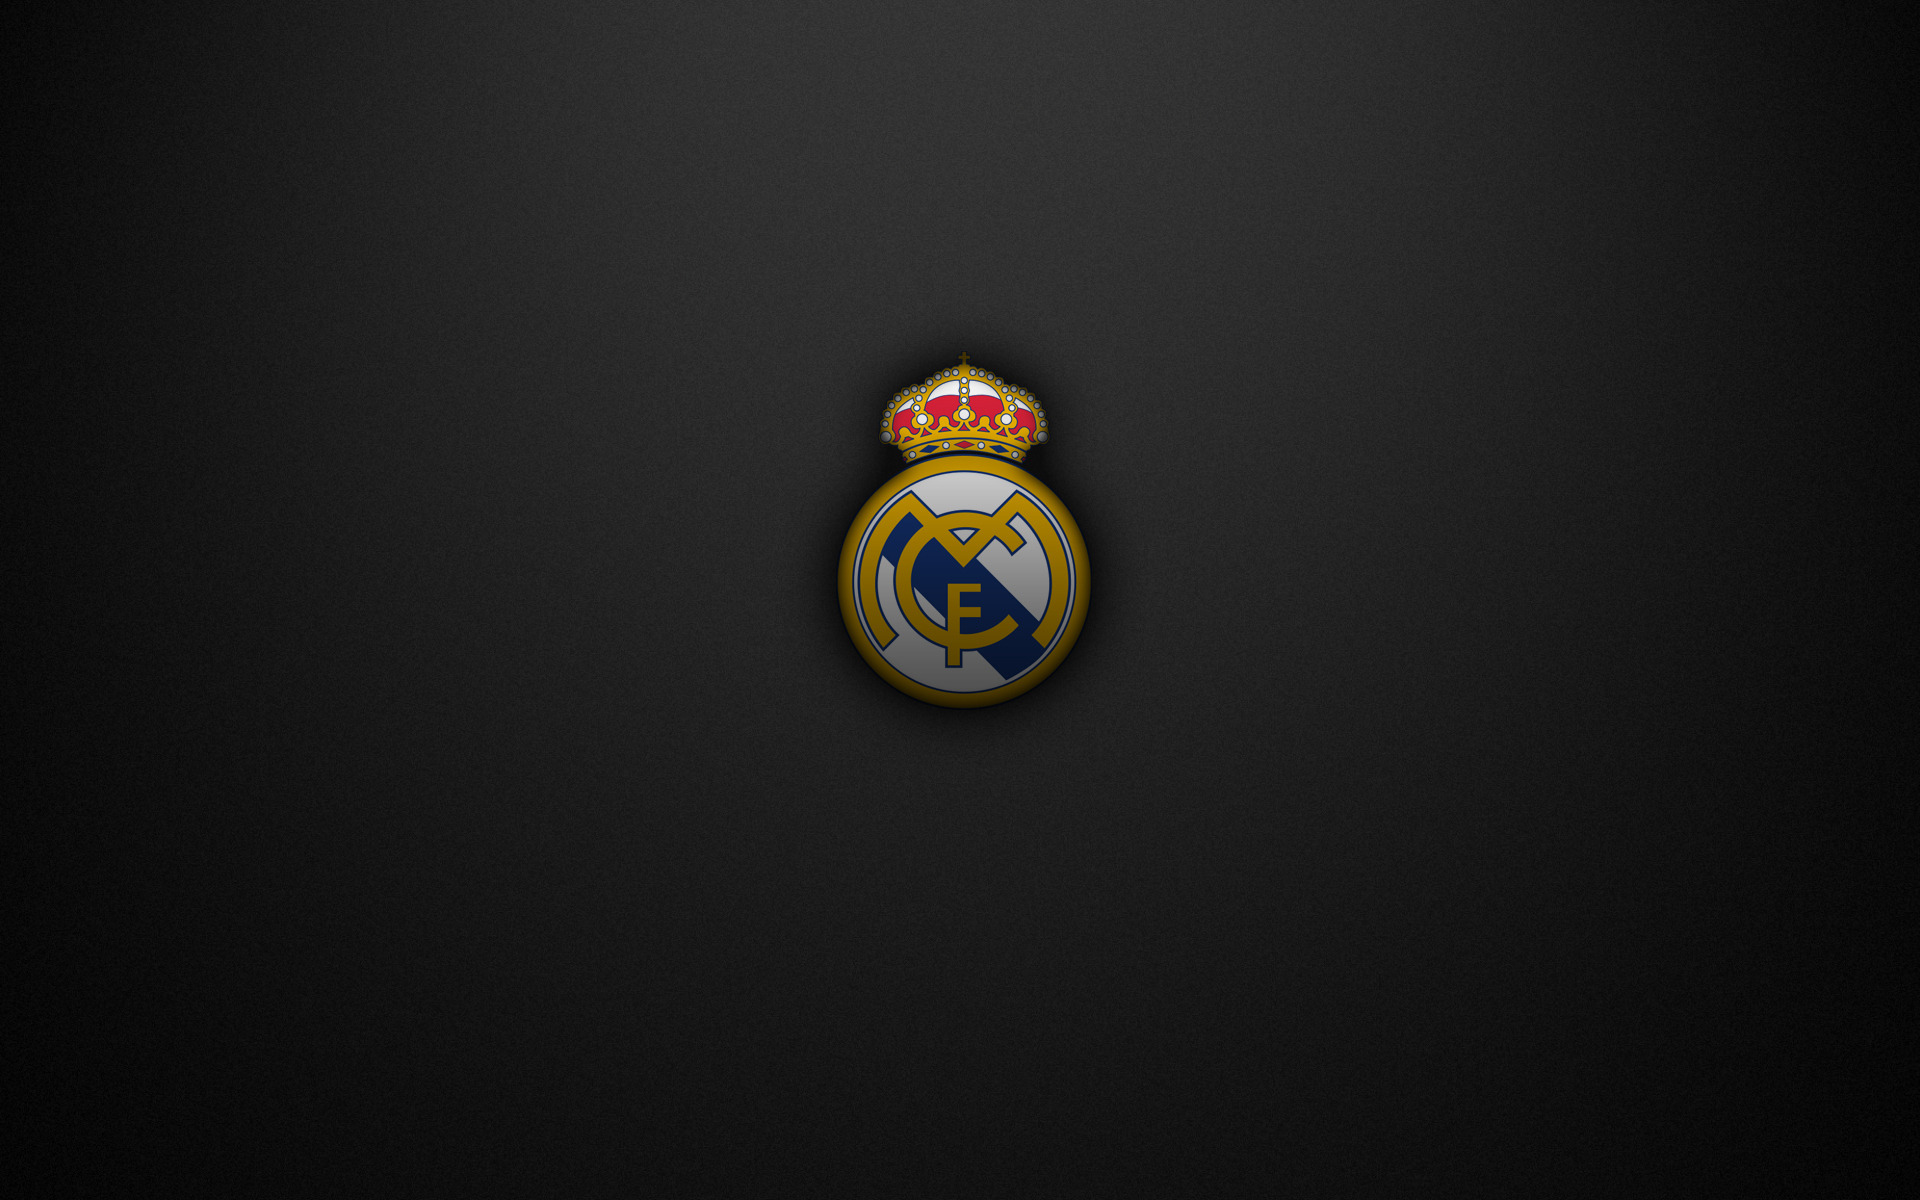 Красивая эмблема ФК Реал на сером фоне Спорт картинки, обои рабочий стол